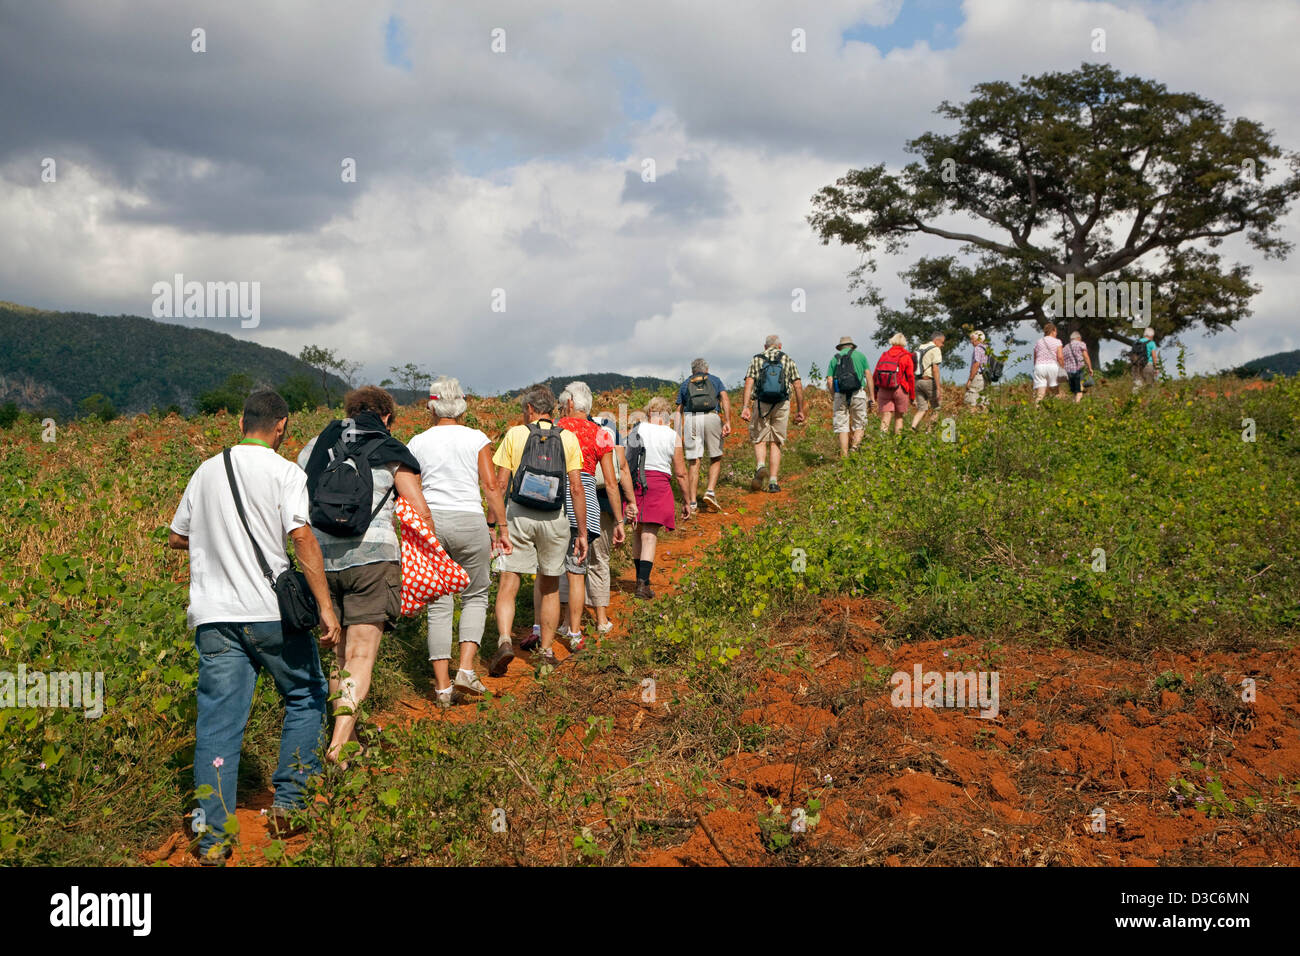 Los turistas de explorar el Valle de Viñales / Valle de Viñales, en la Sierra de los Organos, Pinar del Río, Cuba, El Caribe Foto de stock